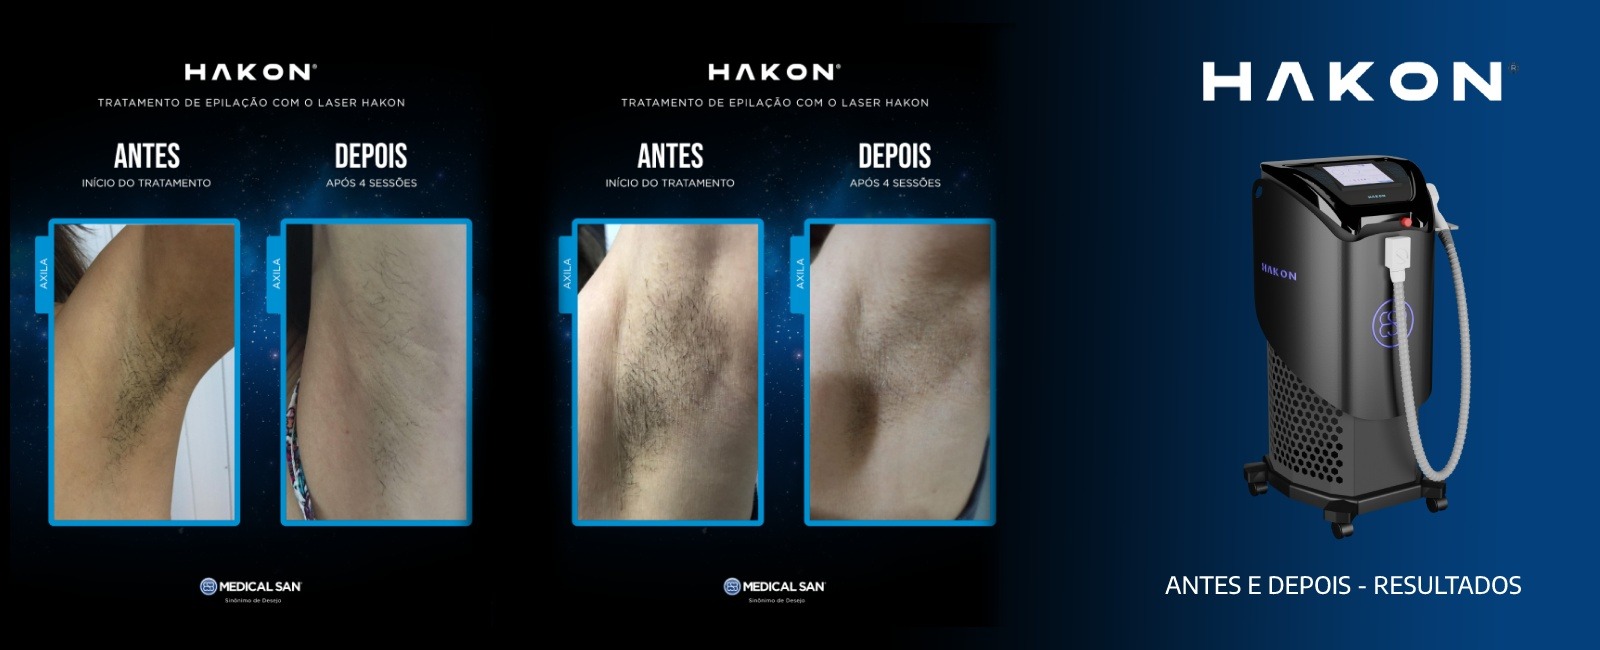 Comparação do antes e depois da eficácia do equipamento Hakon laser 4D